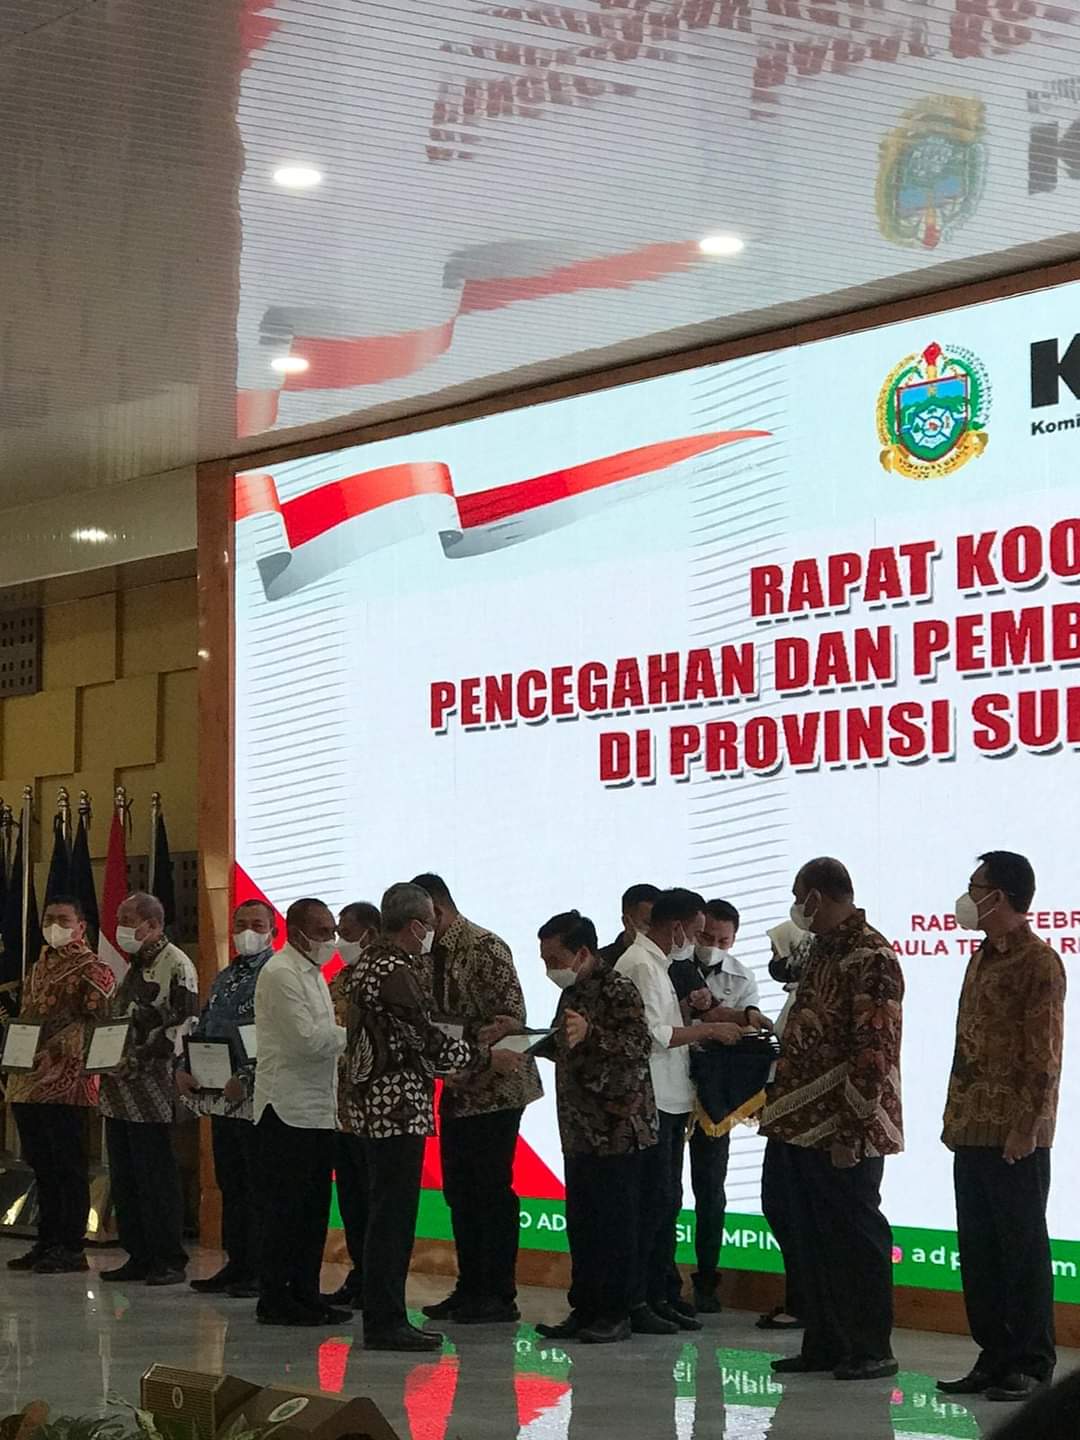 Bupati Dairi, Dr Eddy Keleng Ate Berutu menjadi salah satu kepala daerah yang diundang dalam menerima apresiasi dari Komisi Pemberantasan Korupsi (KPK) dengan capaian pencegahan korupsi (MCP), Rabu (23/2/2022) di Medan.